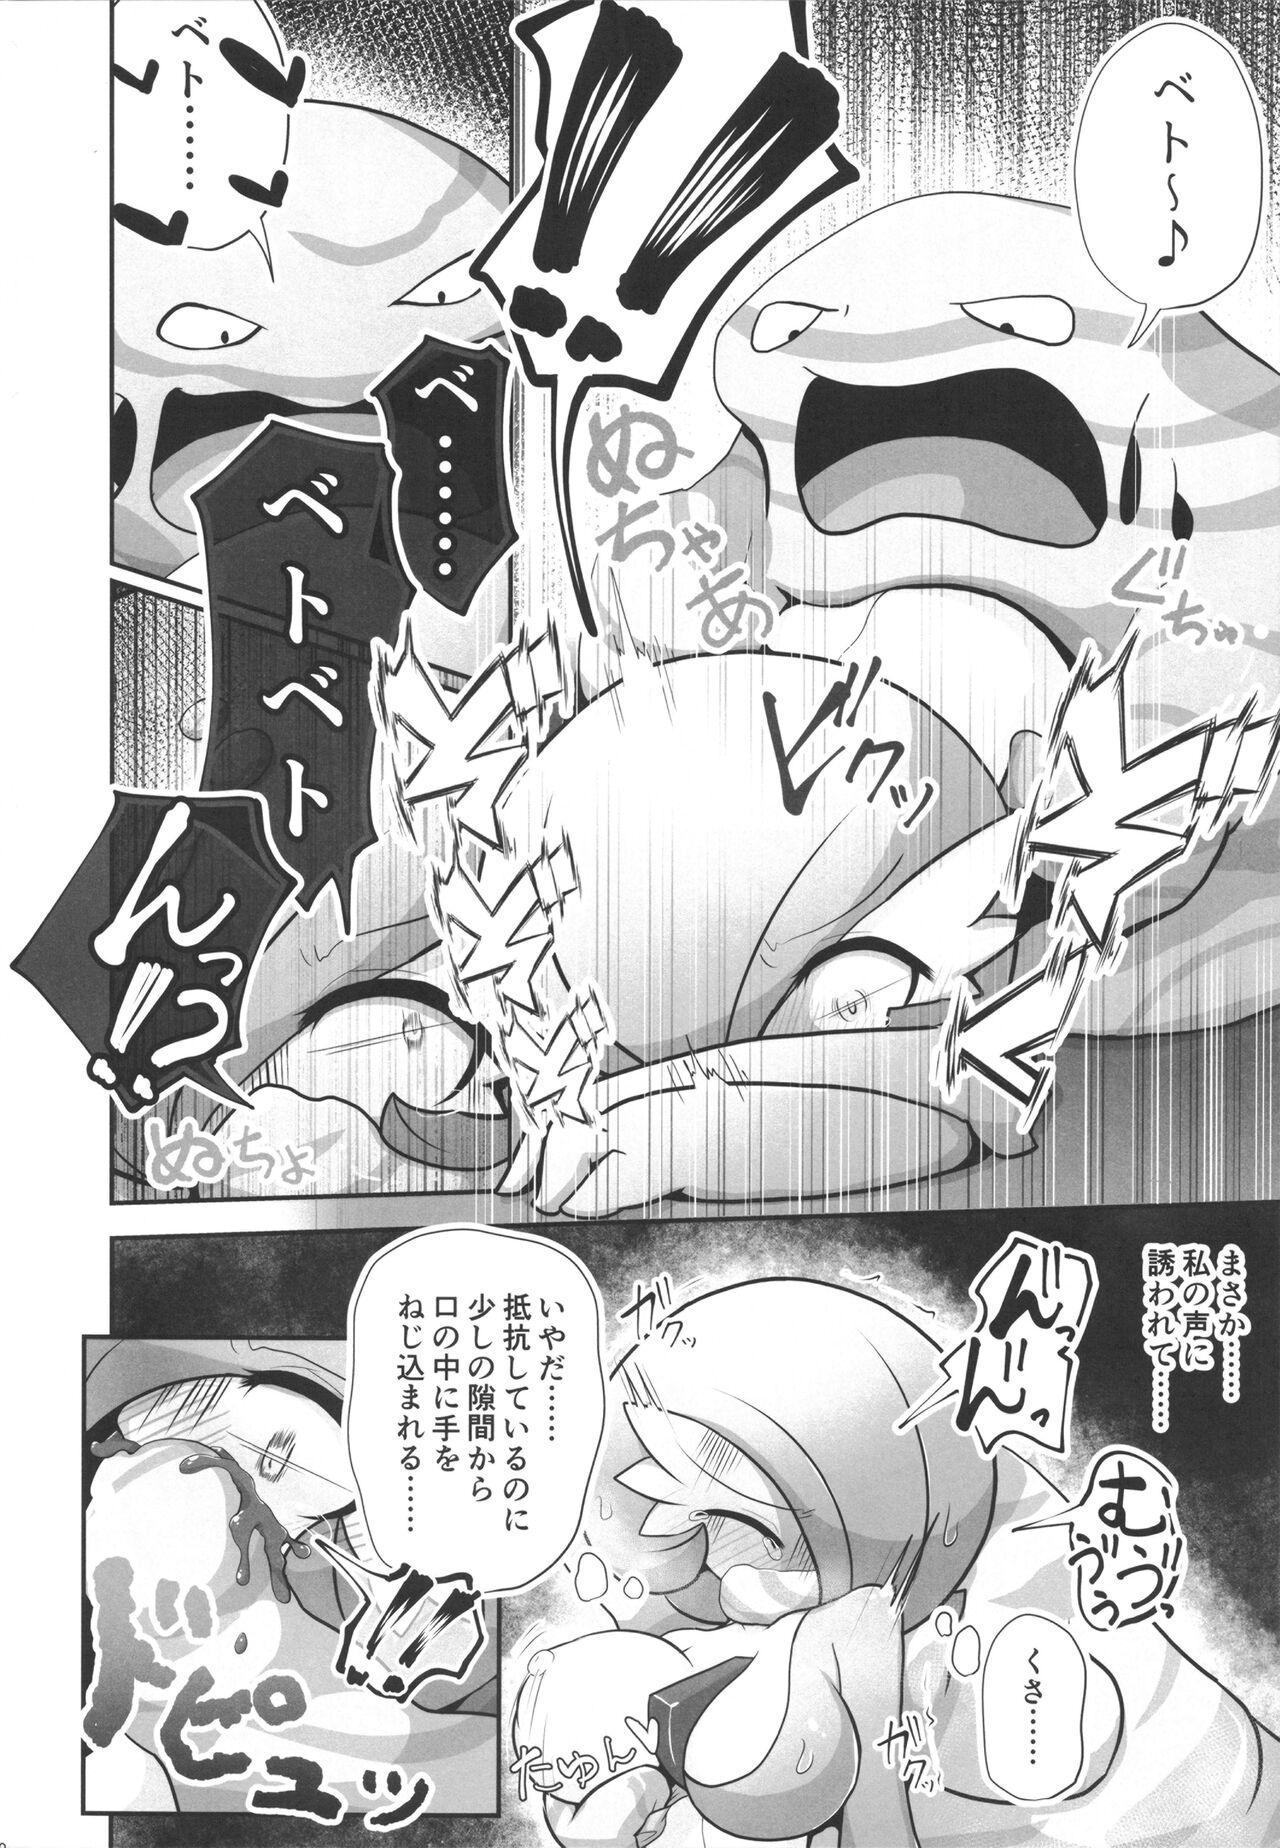 Bubblebutt Saucy Sana and Synchronization Remake Version - Pokemon | pocket monsters Nena - Page 9